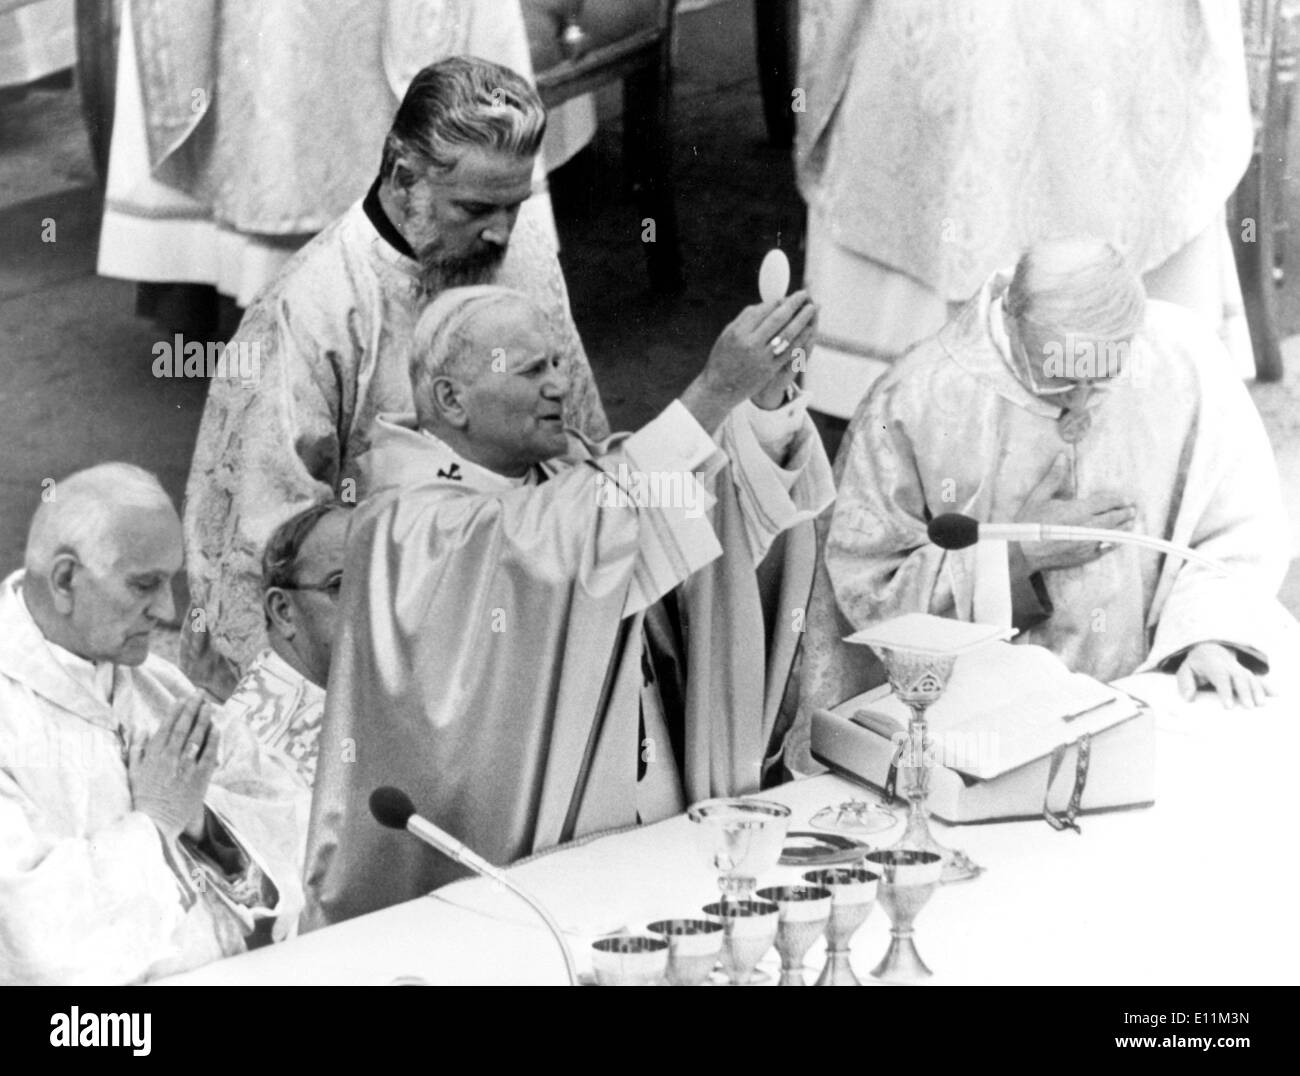 5216140 (900326) Papst JOHANNES PAUL II. haelt bei circuizione Inthronisation eine Hostie in die Hoehe. Vatikanstadt , 23.10.1978. Foto Stock